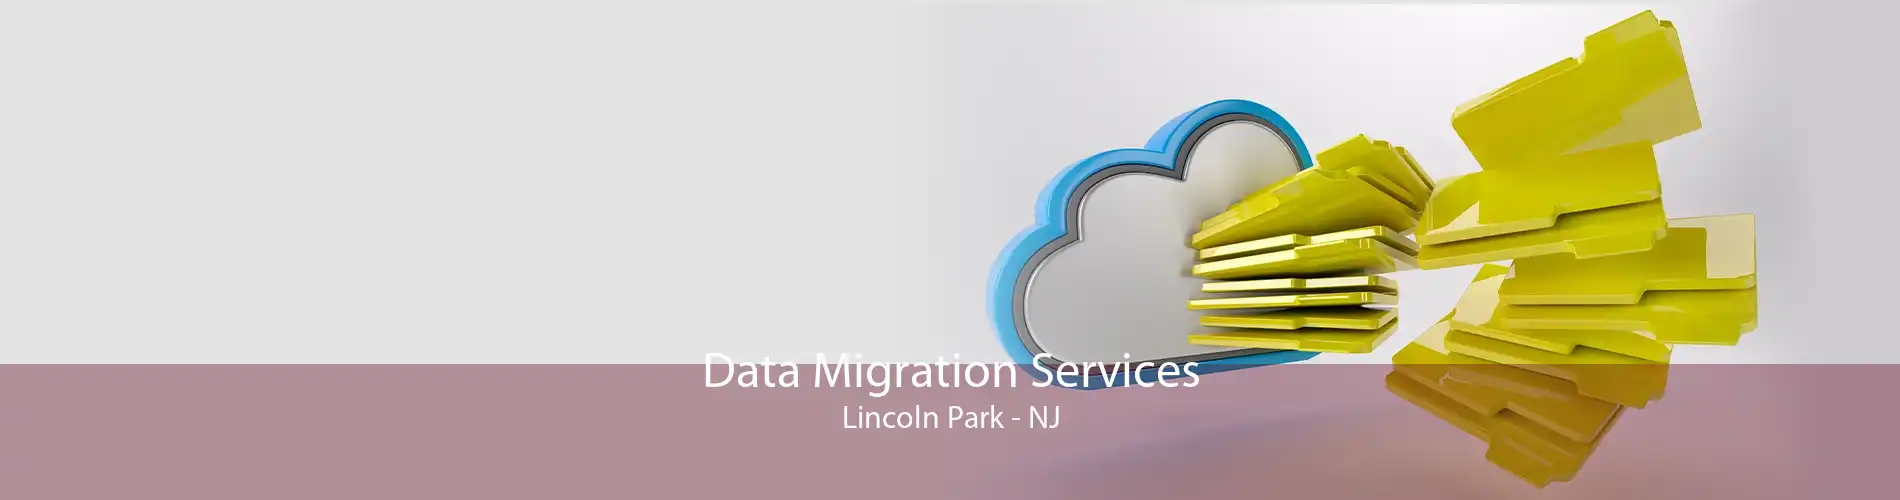 Data Migration Services Lincoln Park - NJ